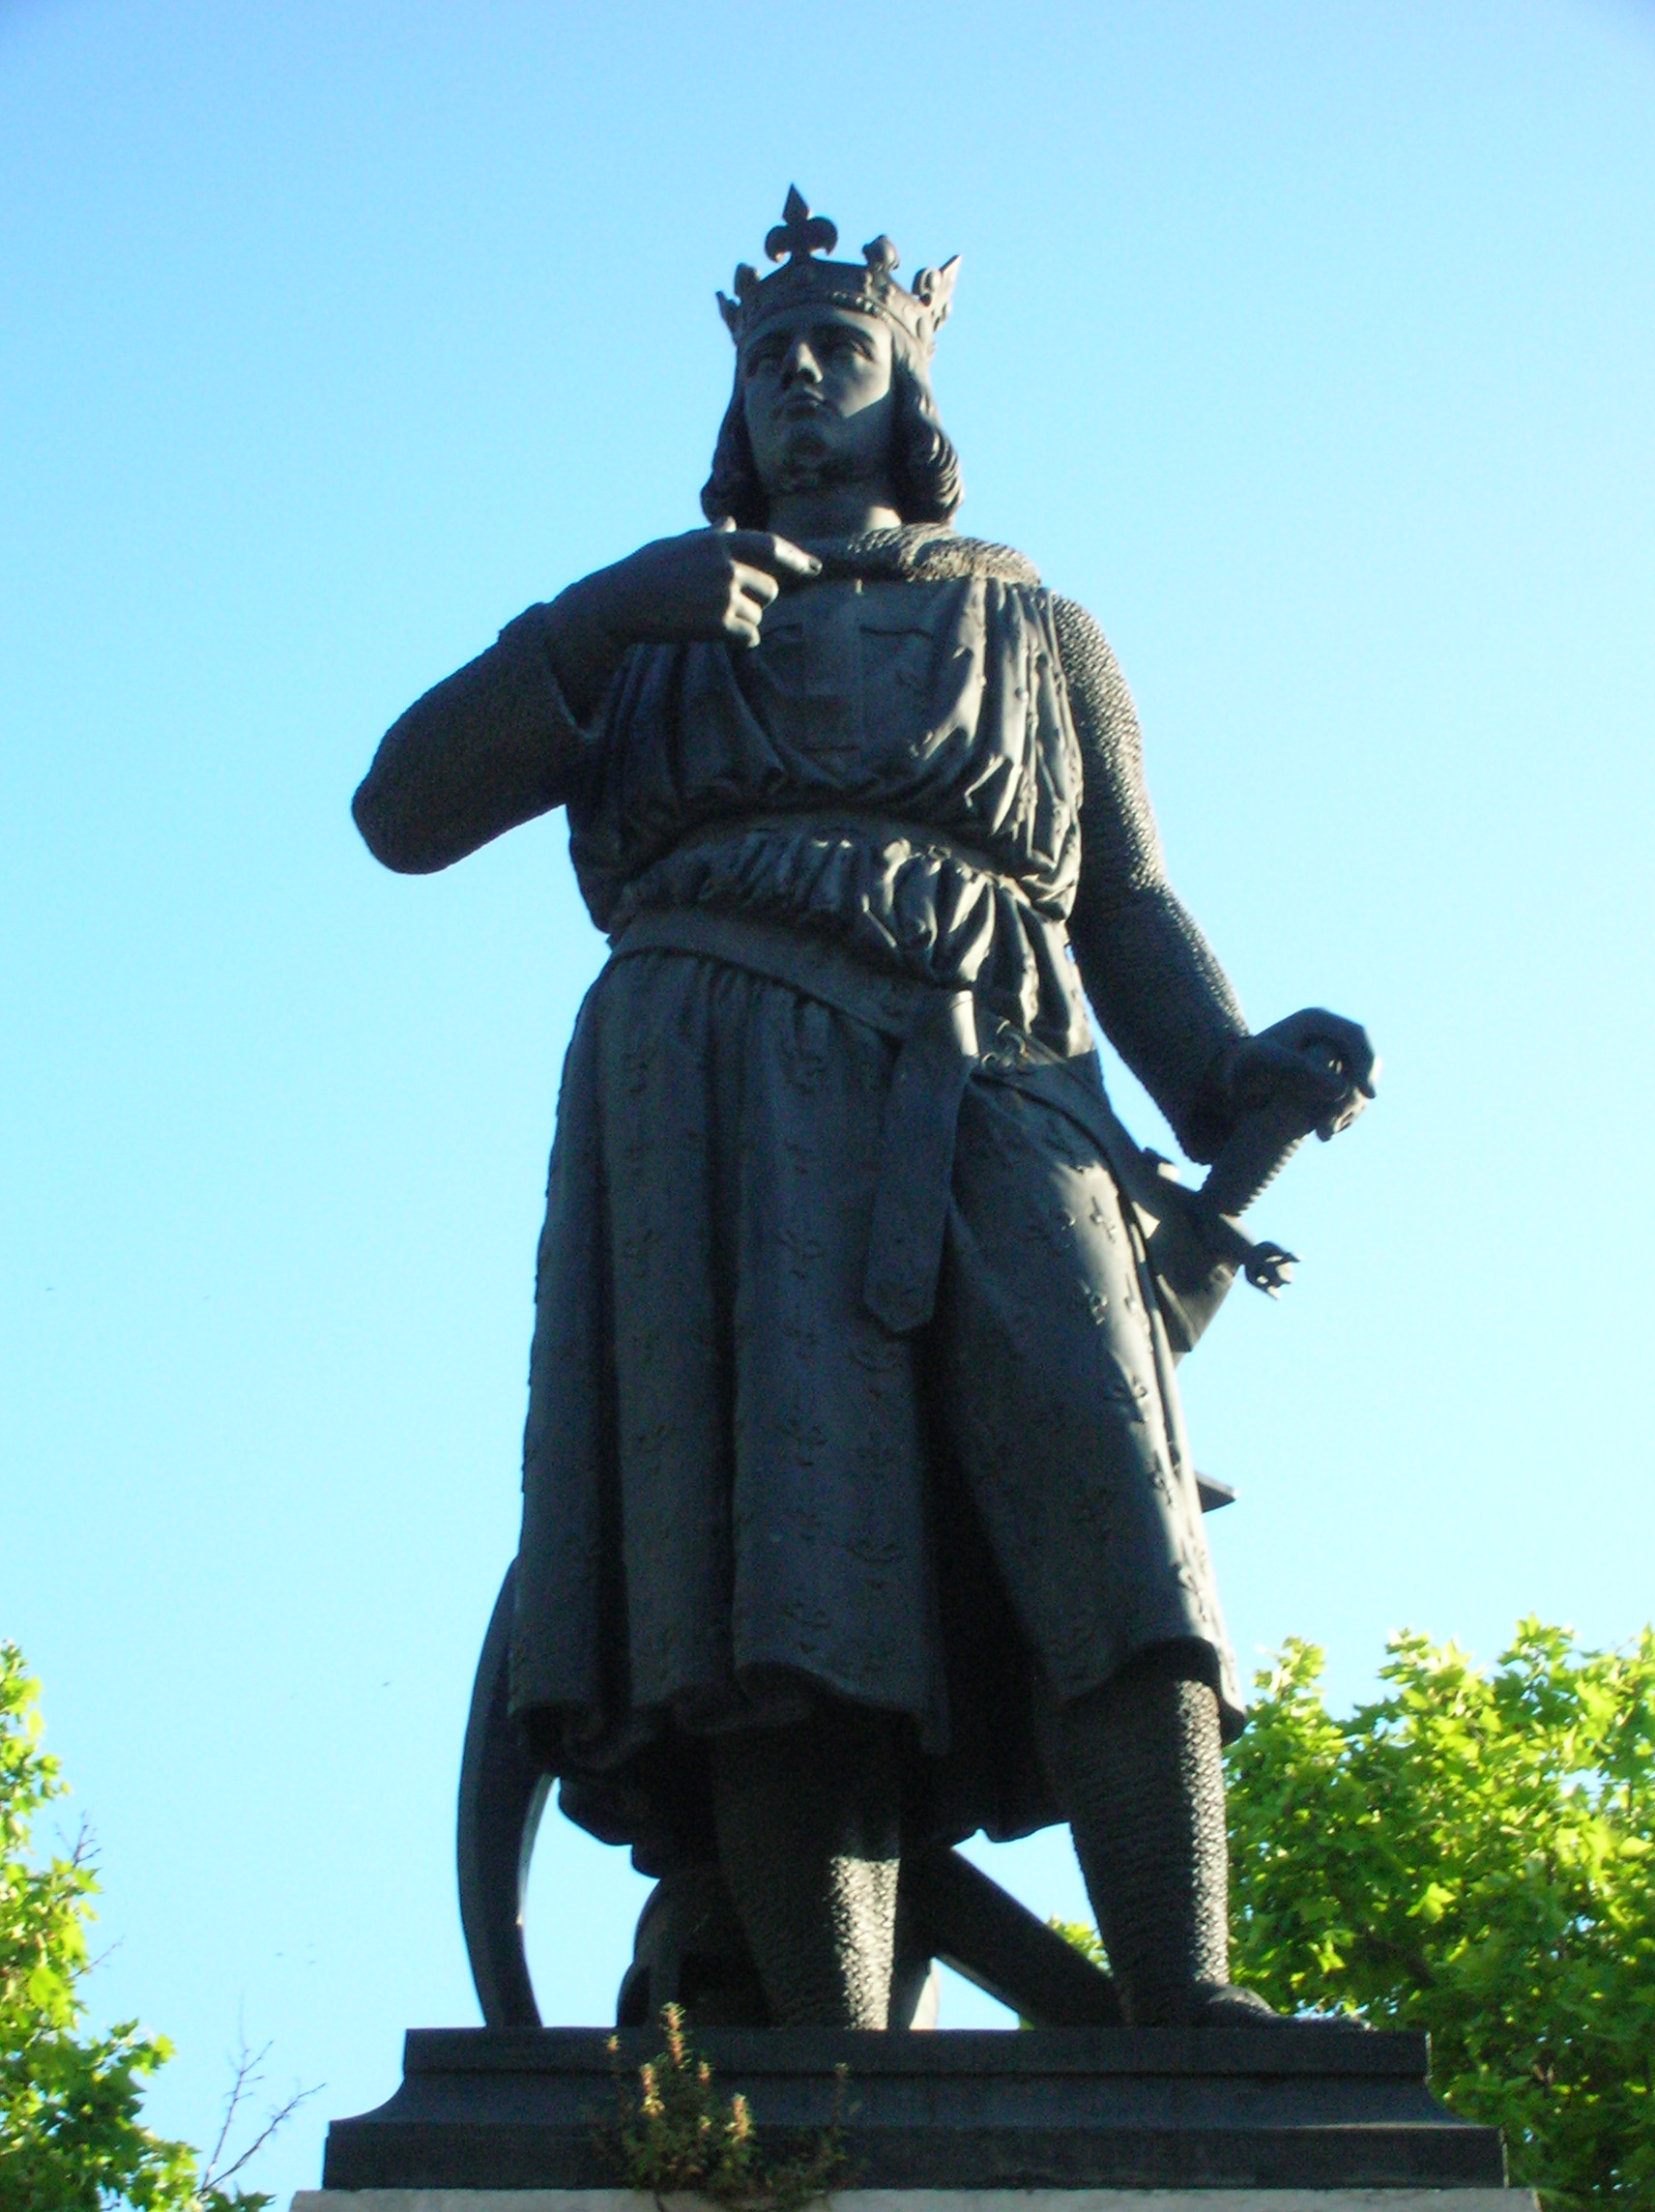 Statue of Louis IX de France (Saint Louis), scultped by James Pradier, in Aigues-Mortes